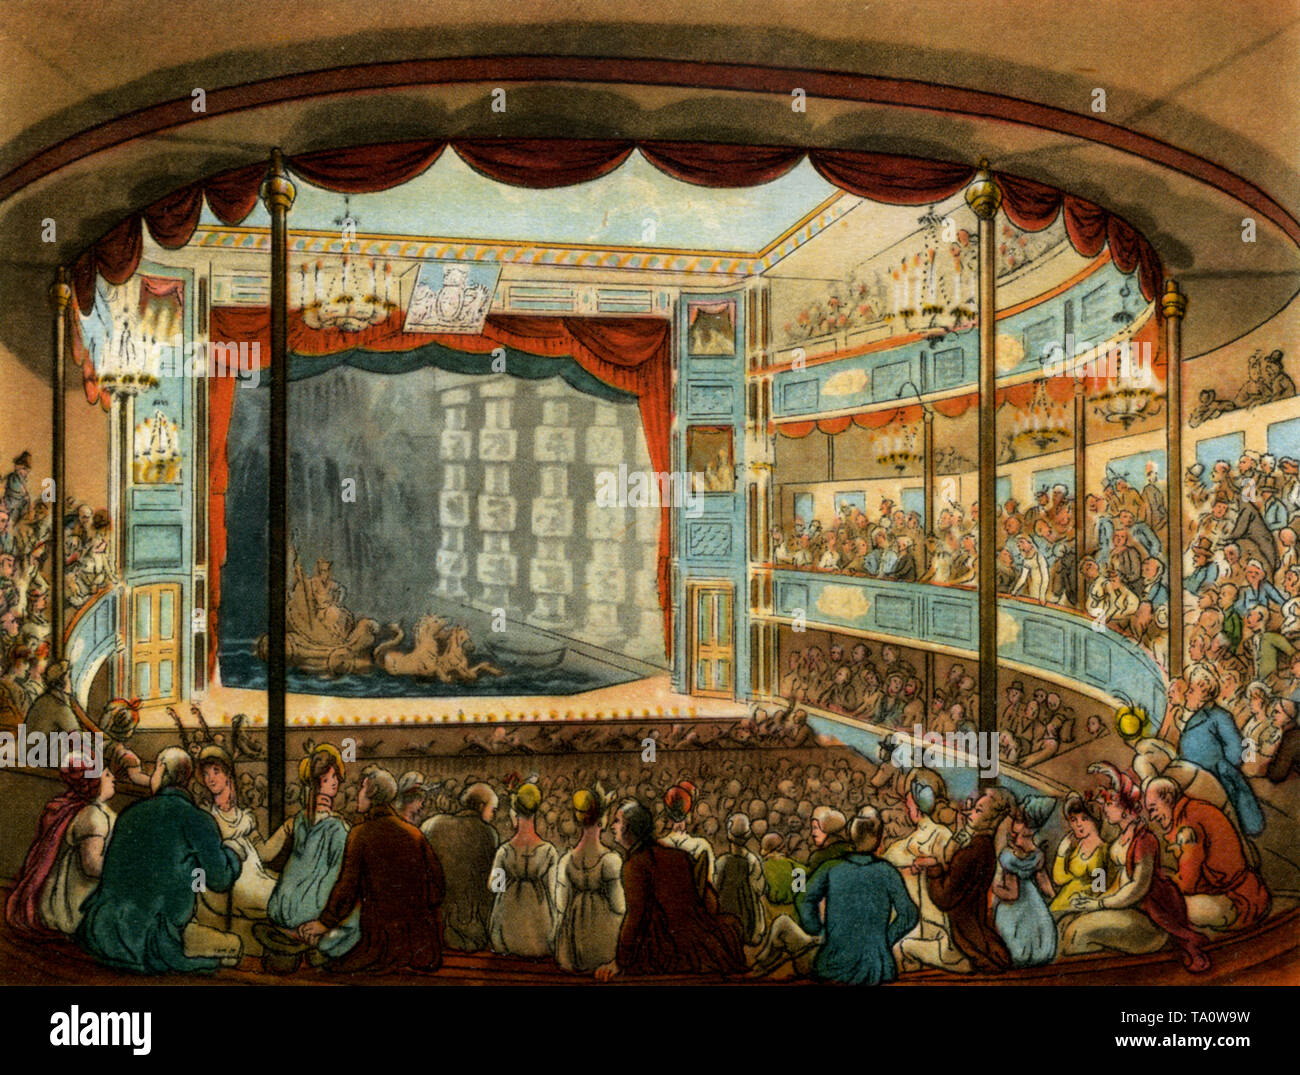 Sadler's Wells Theatre, c1808-1810. Ein Druck aus dem 'Mikrokosmos von London', von William Henry Pyne (1770-1843). Illustriert von Thomas Rowlandson (1756-1827) und Auguste Charles Pugin (1762-1832). Das prächtige Auditorium des ehemaligen Sadler's Wells Theatre. Heute berühmt als Veranstaltungsort für Ballett sehen wir es hier als Aquatic Theatre genutzt. Mit dem Bau eines großen Panzers, der vom nahe gelegenen New River überflutet wurde, wurde ein Aquatic Theatre verwendet, um extravagante Marinemelodramen zu inszenieren. Stockfoto